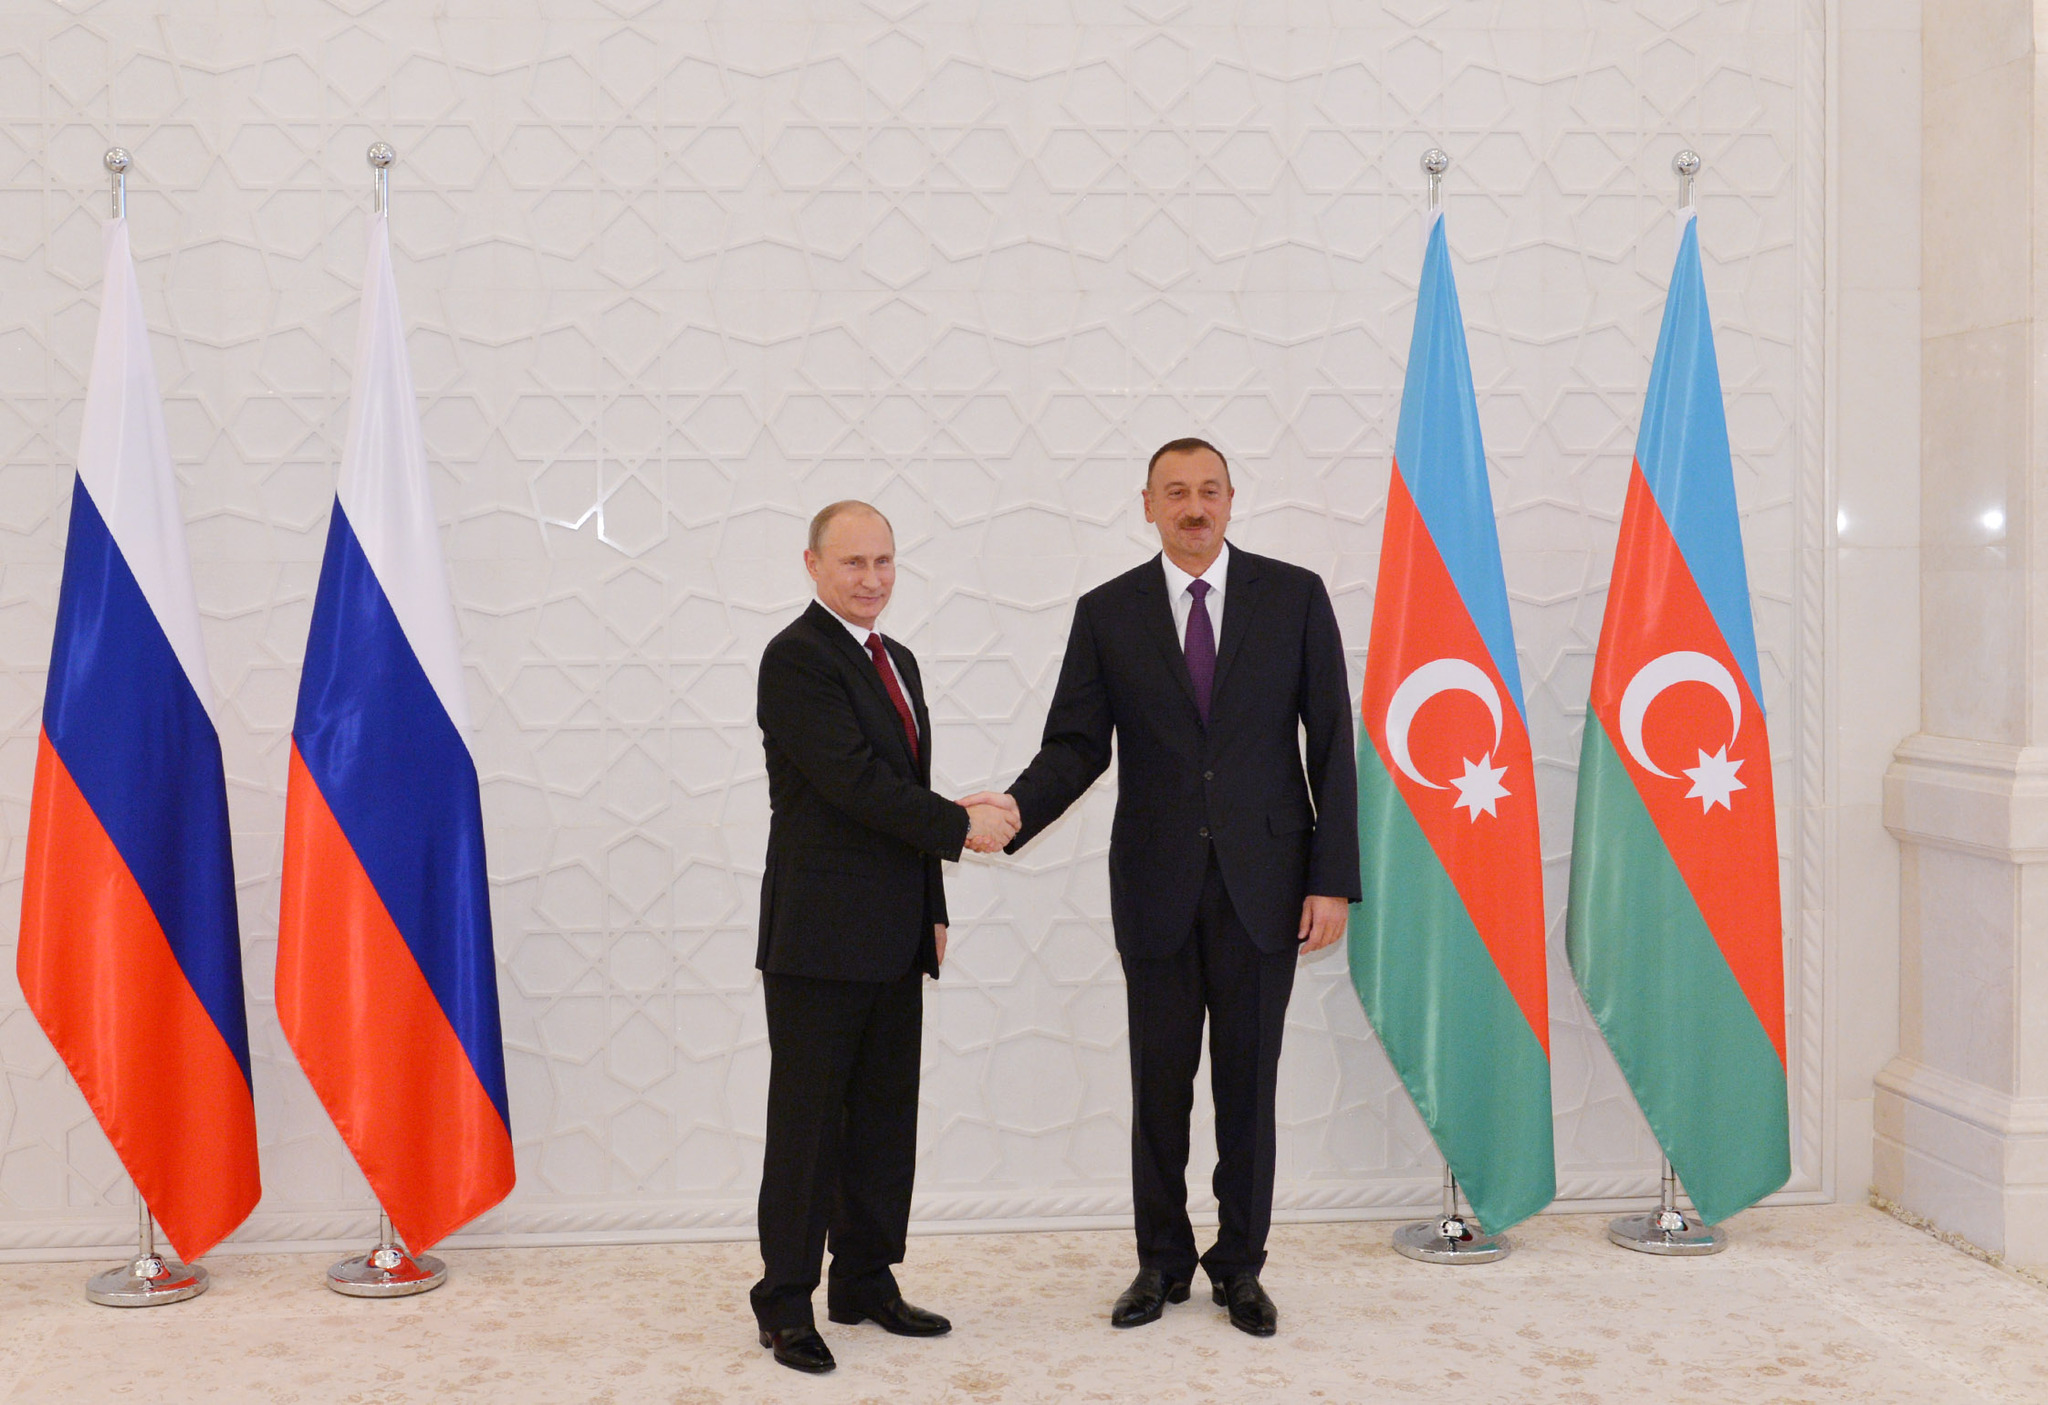 флаг турции флаг азербайджана вместе